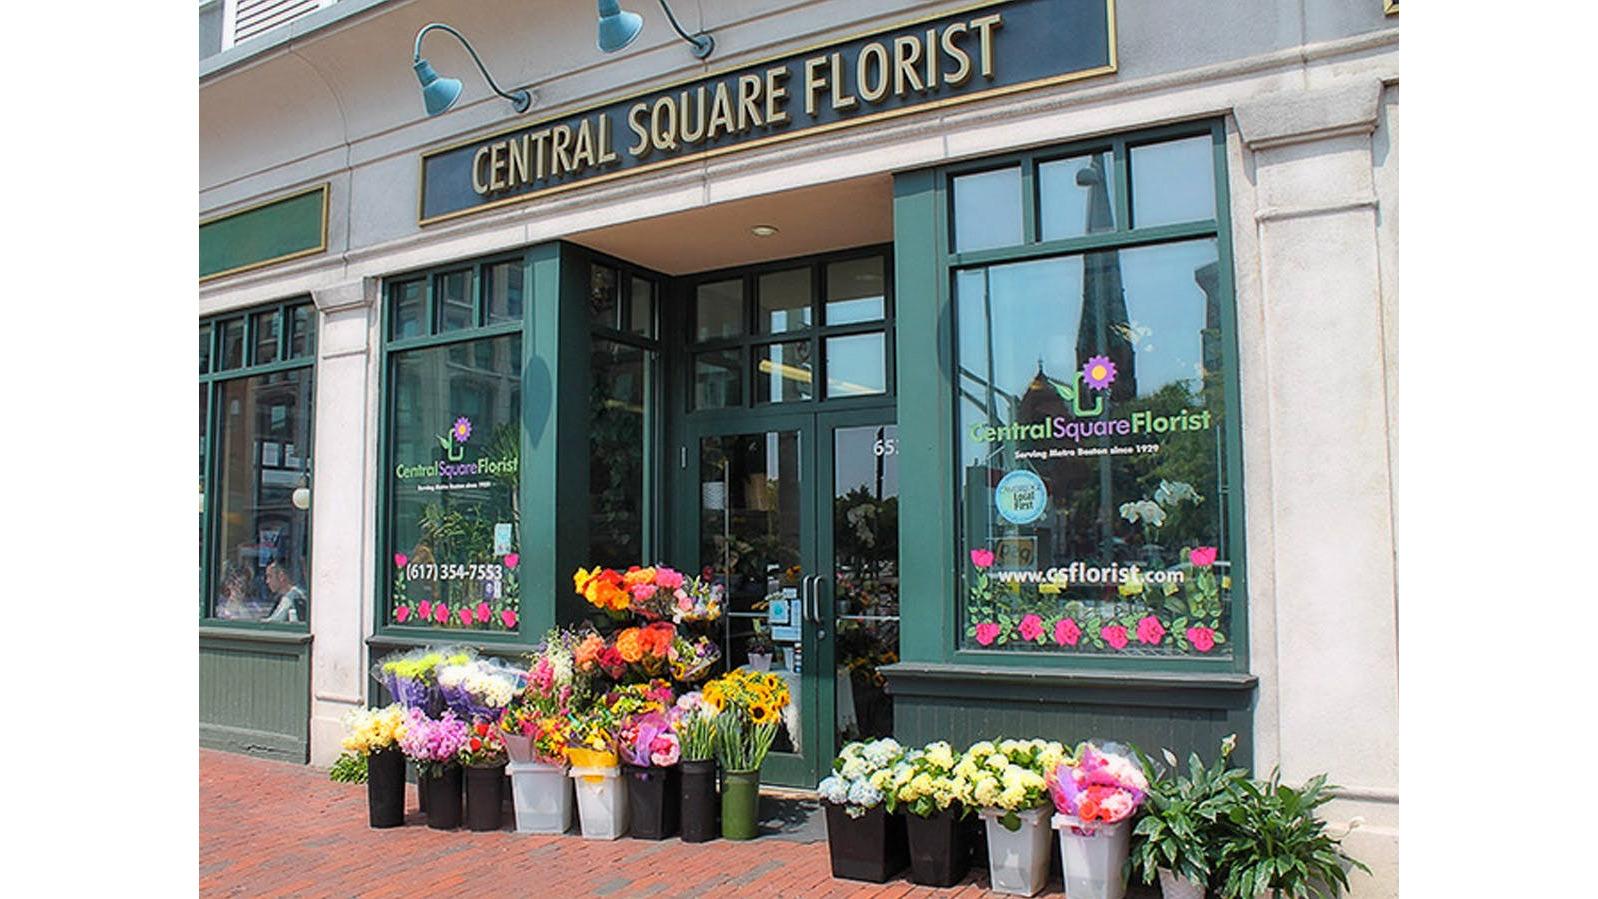 Central Square Florist